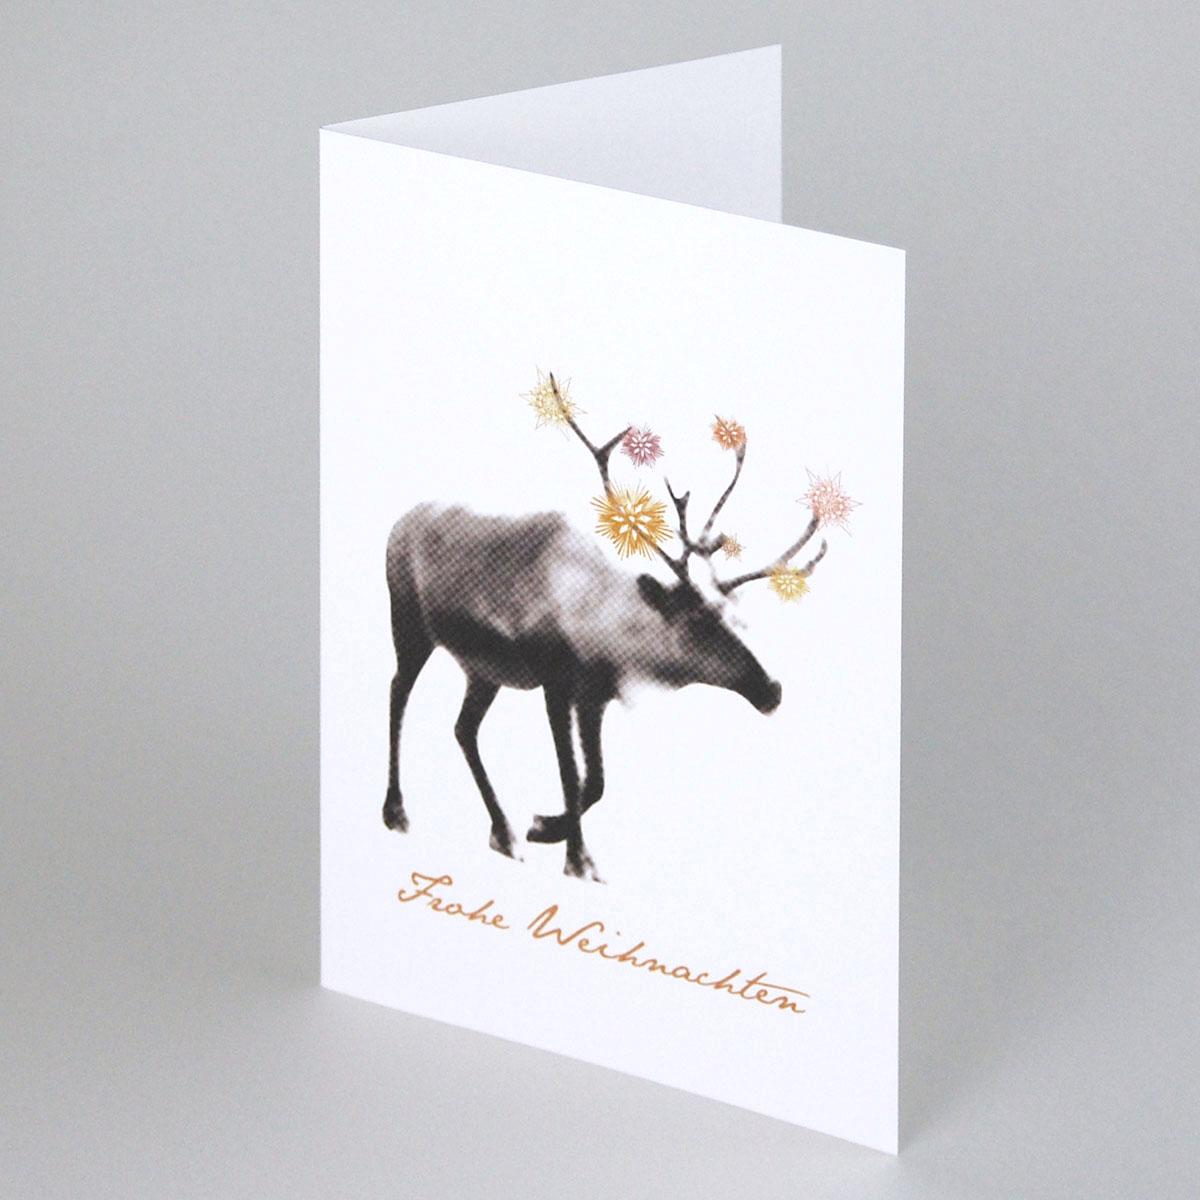 Design-Weihnachtskarte: Frohe Weihnachten + Rentier